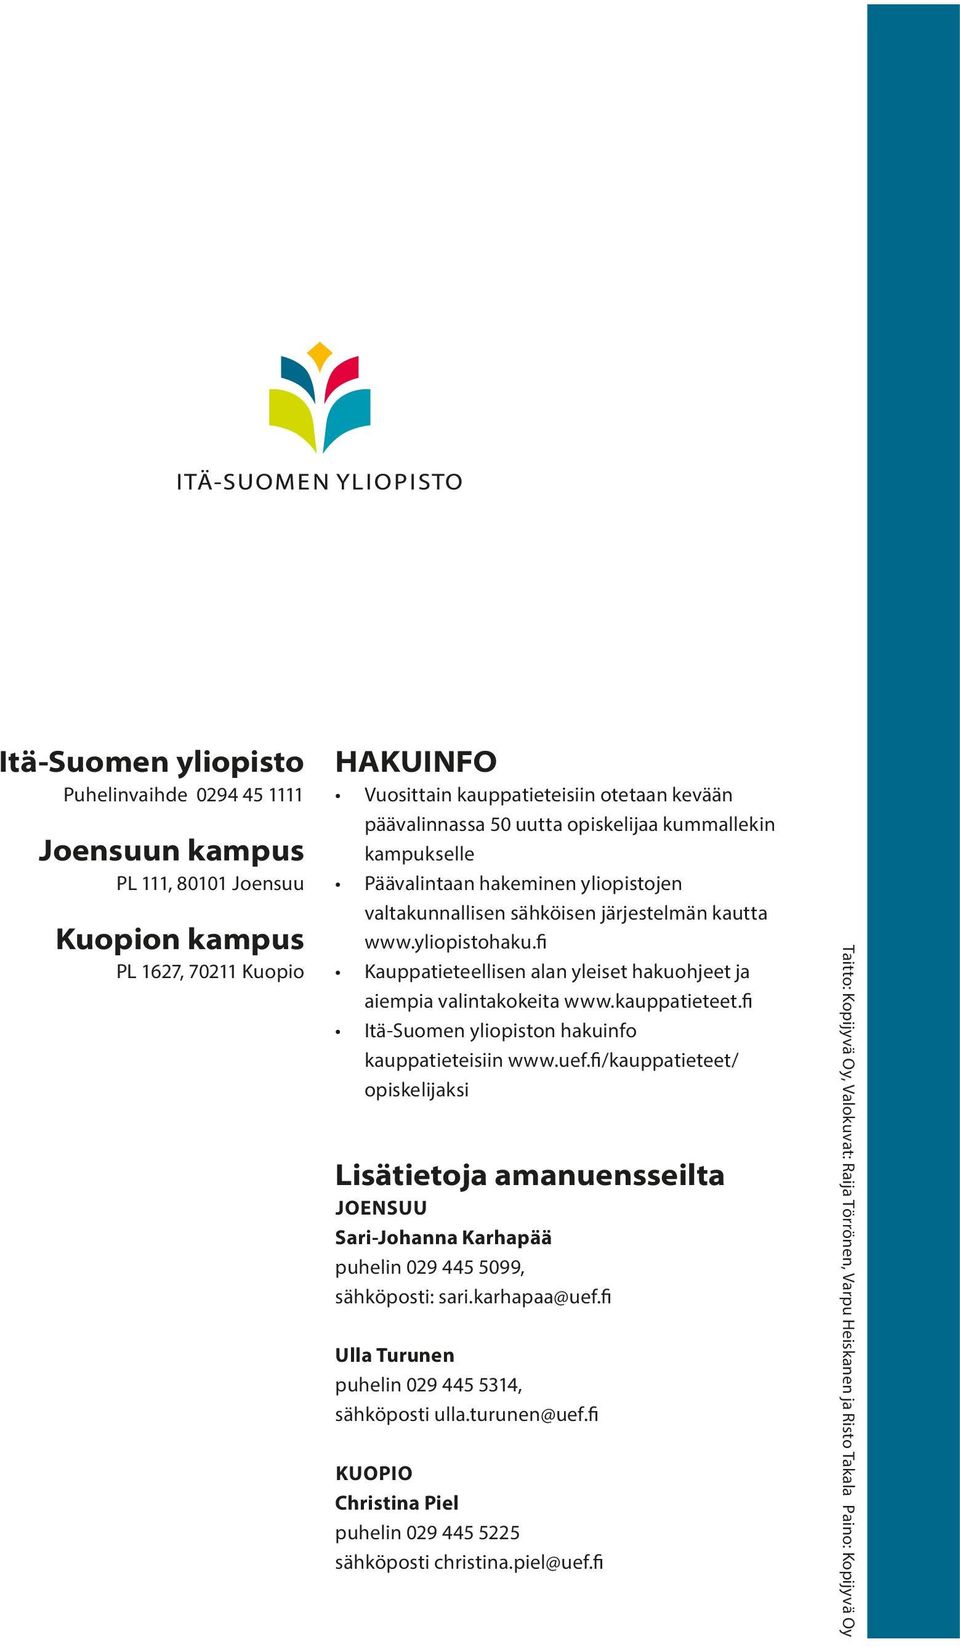 fi Kauppatieteellisen alan yleiset hakuohjeet ja aiempia valintakokeita www.kauppatieteet.fi Itä-Suomen yliopiston hakuinfo kauppatieteisiin www.uef.